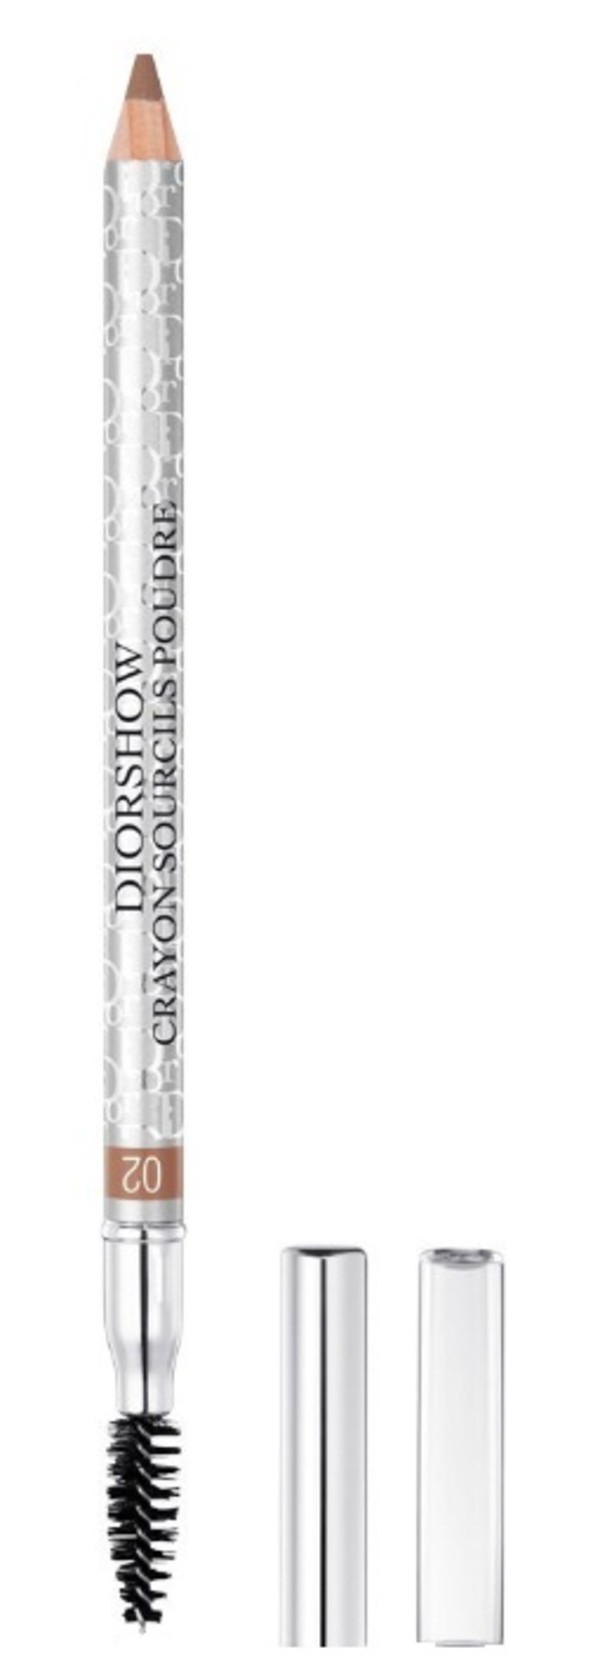 Diorshow Powder Eyebrow Pencil 02 Chesnut Kredka do brwi